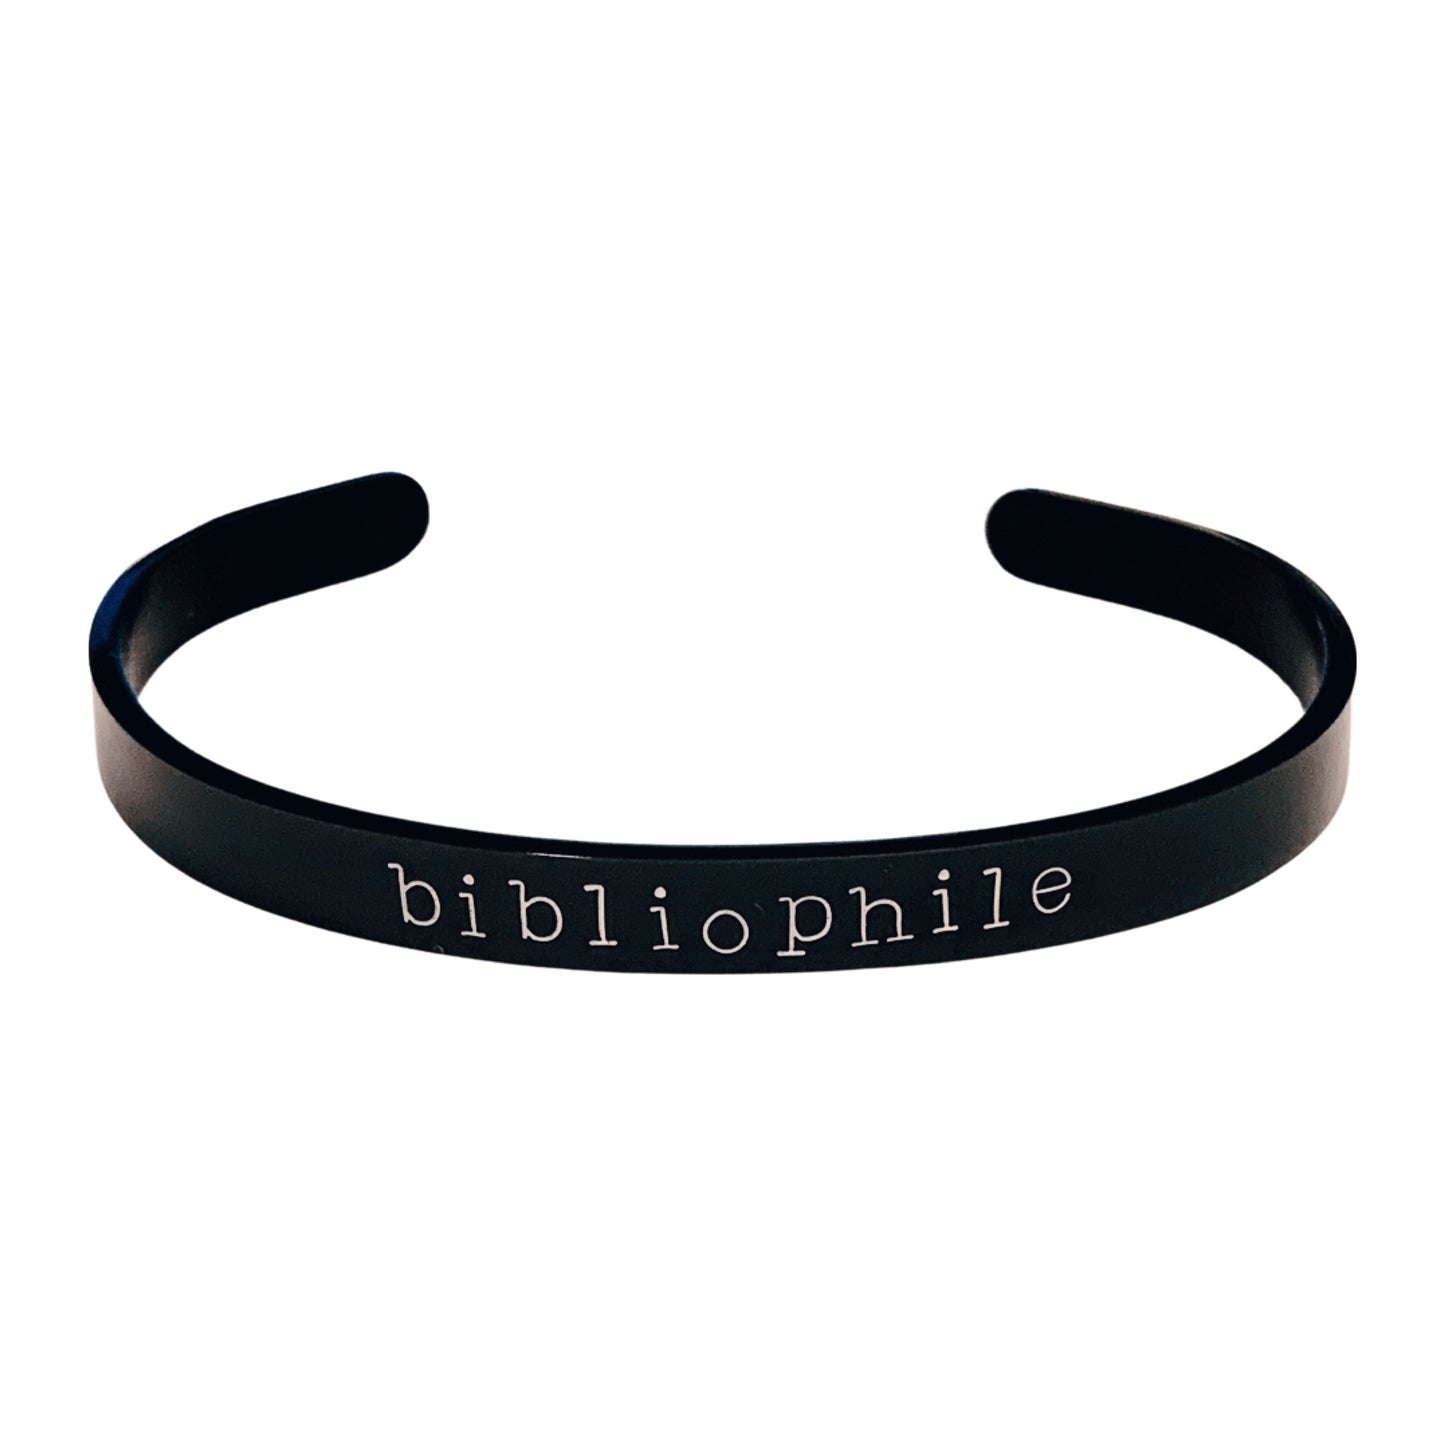 Bibliophile - Cuff Bracelet